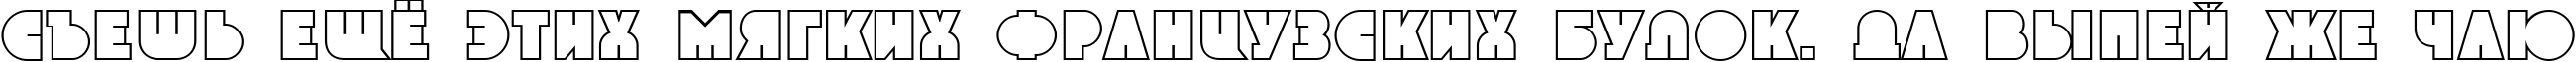 Пример написания шрифтом a_GrotoOtl текста на русском